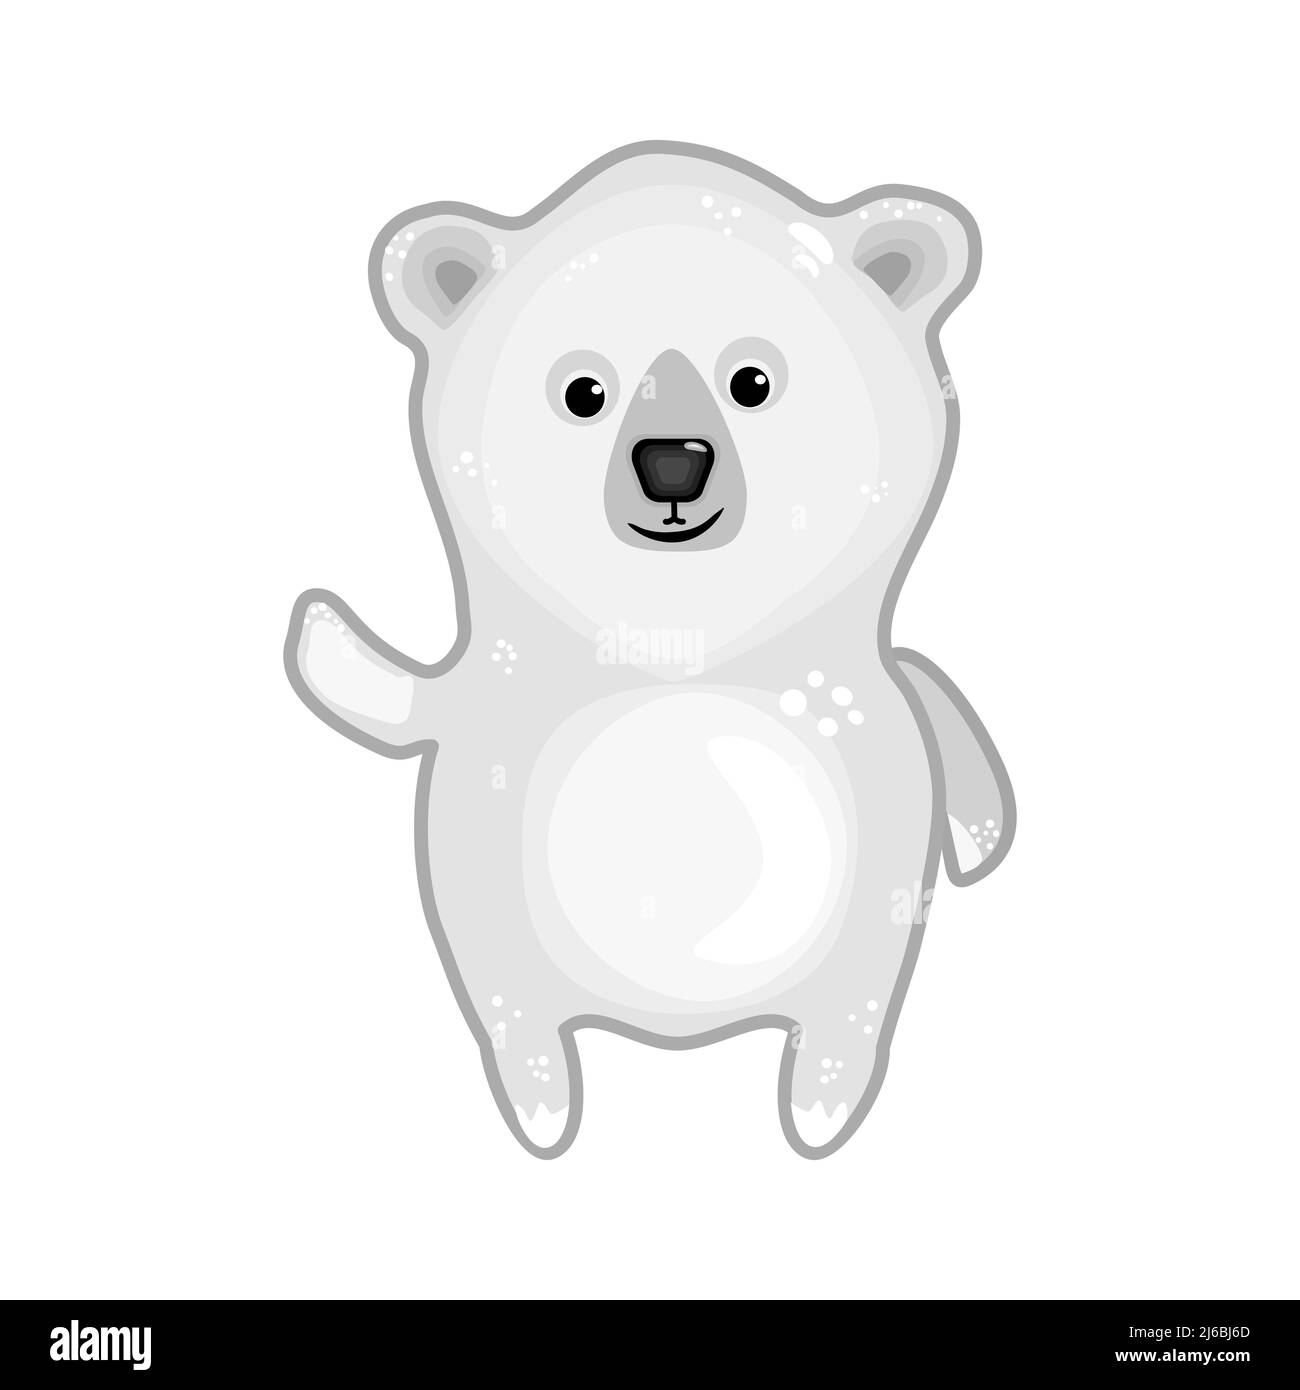 Eisbär isoliert auf weißem Hintergrund. Arctic Bär Cartoon-Figur. Teddybär Junge winkende Hand. Nördliches Tiersymbol. Vektorgrafik für Aktien Stock Vektor